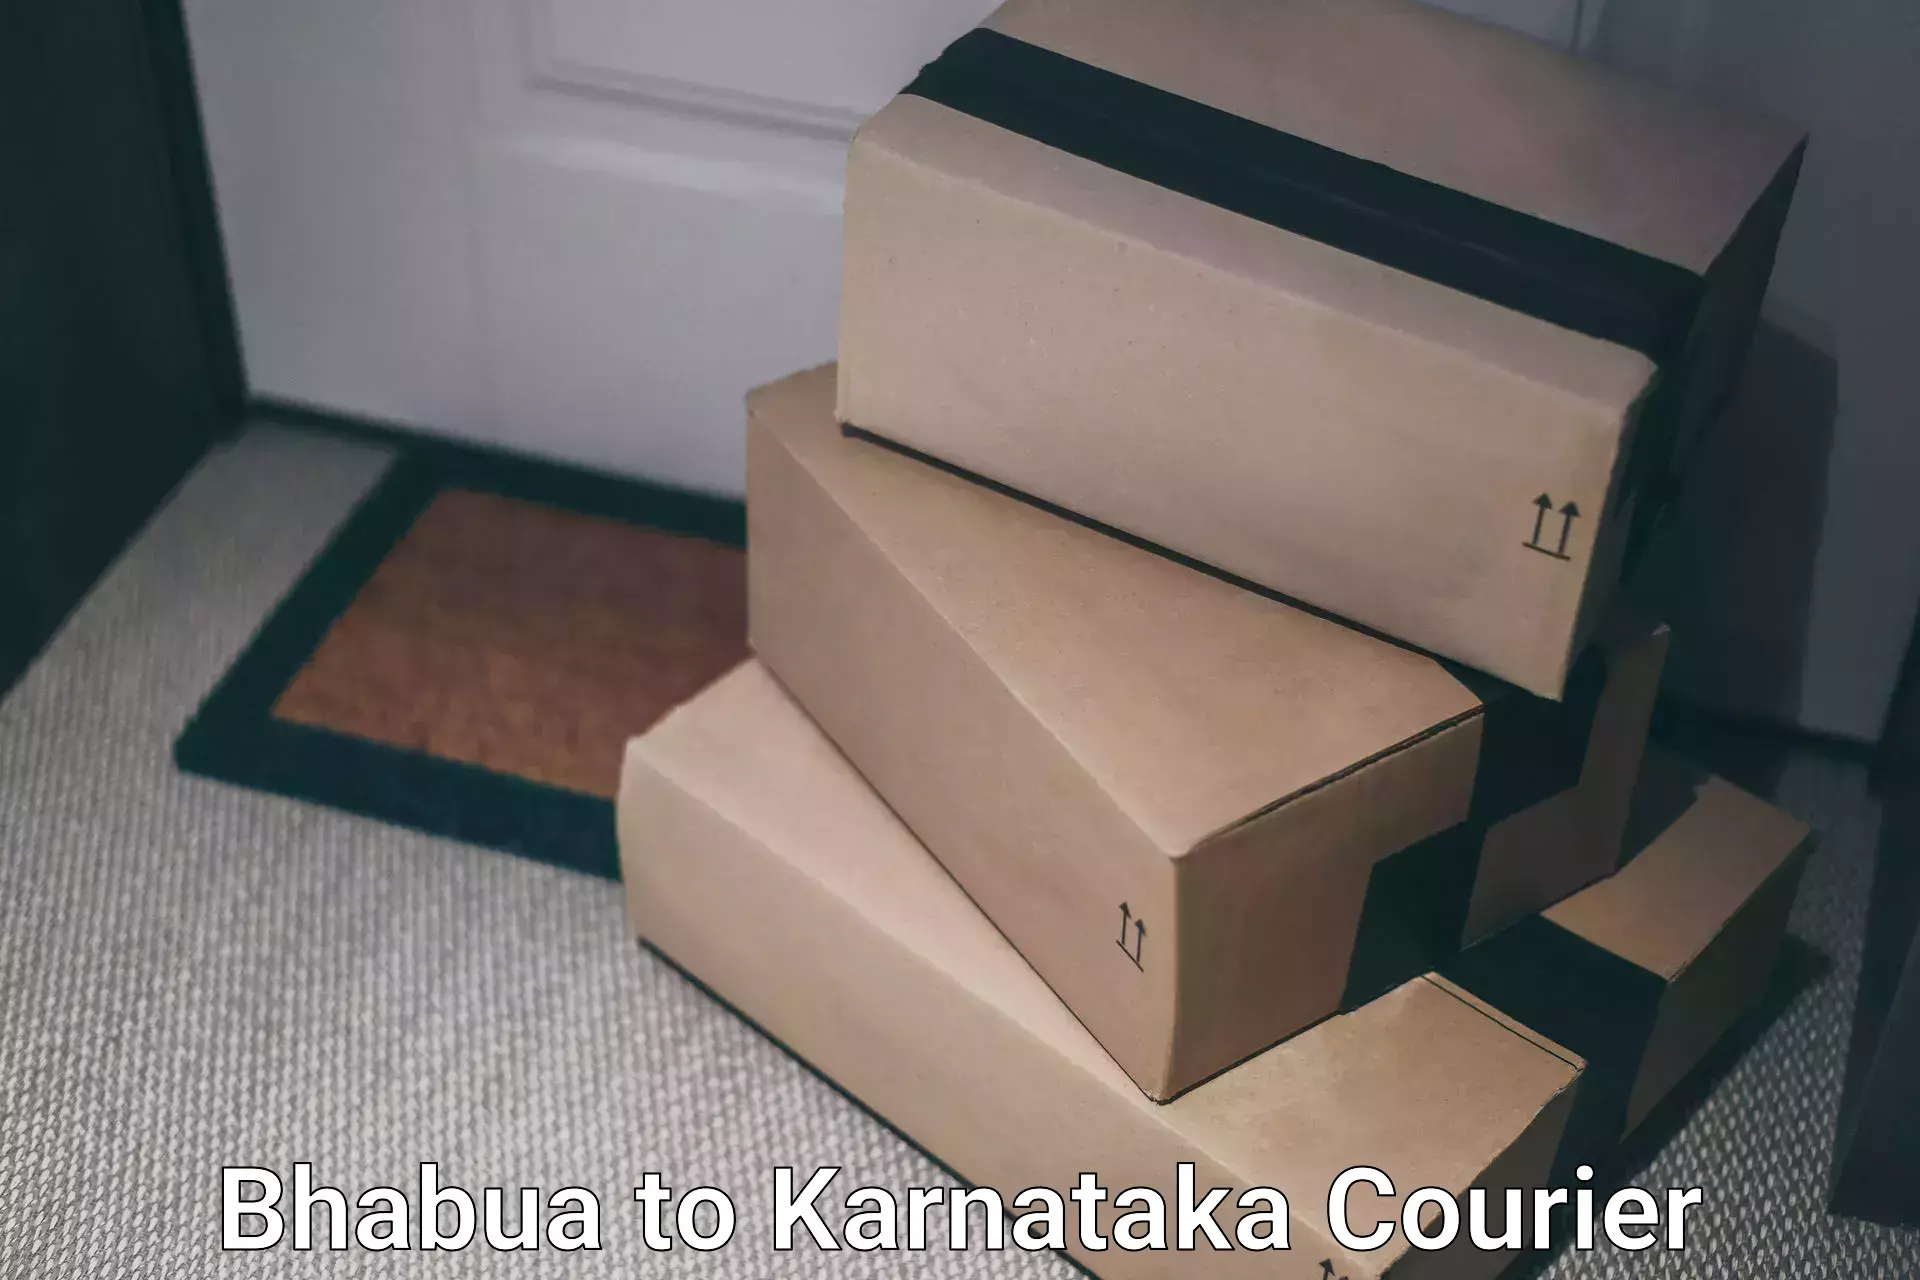 Efficient parcel service Bhabua to Manvi